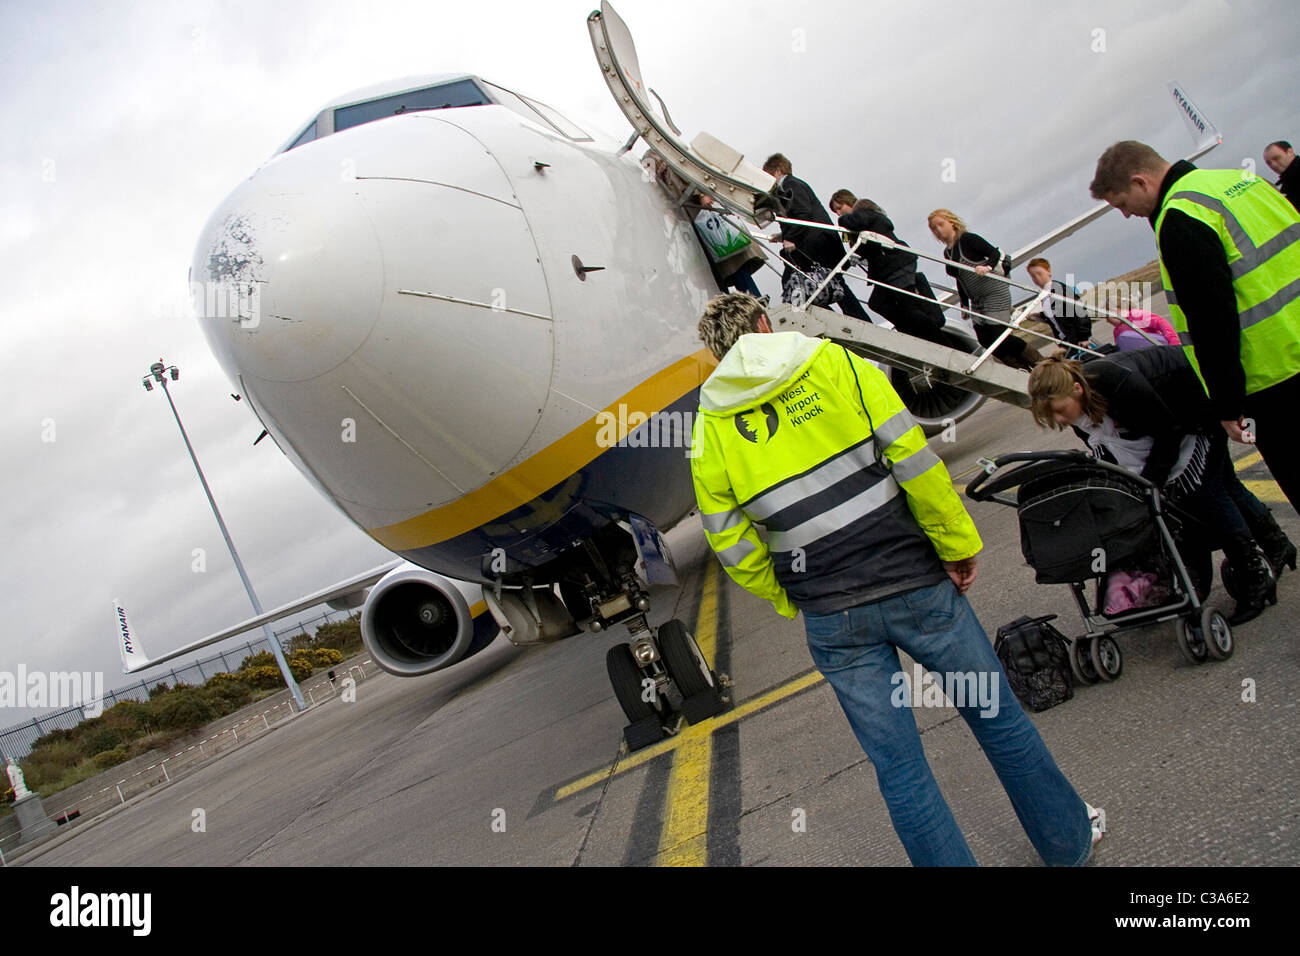 Un aereo Ryanair a Knock aeroporto, West Ireland Foto Stock